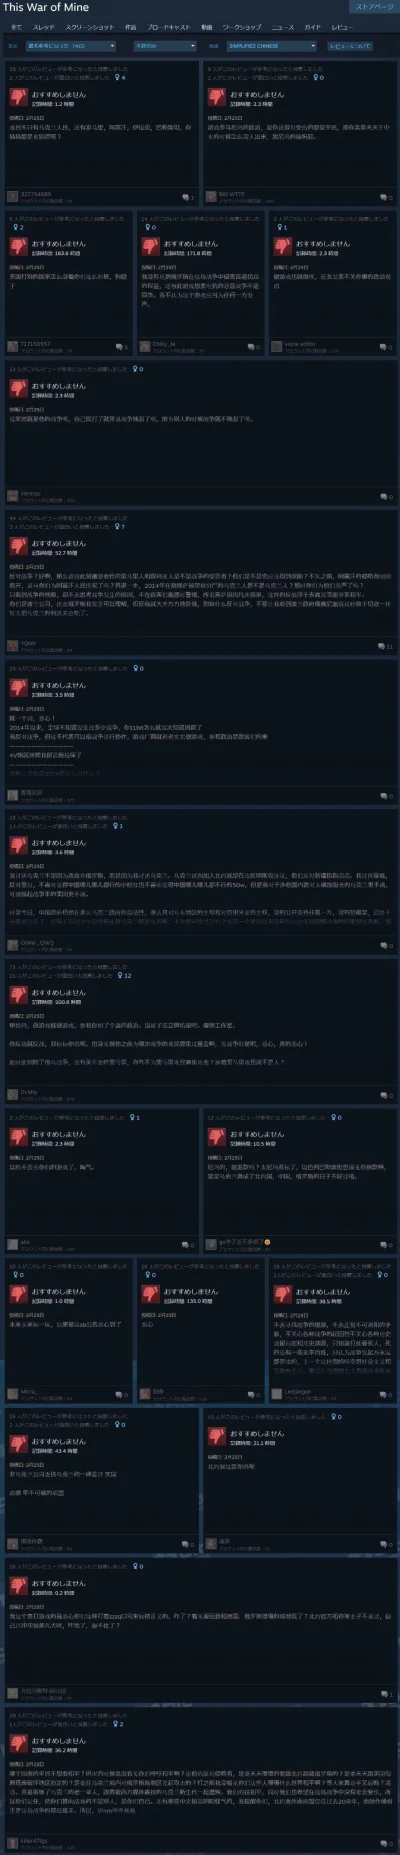 Acrene - A Chińczycy z tej okazji bombardują negatywnymi komentarzami. Źródło reddit